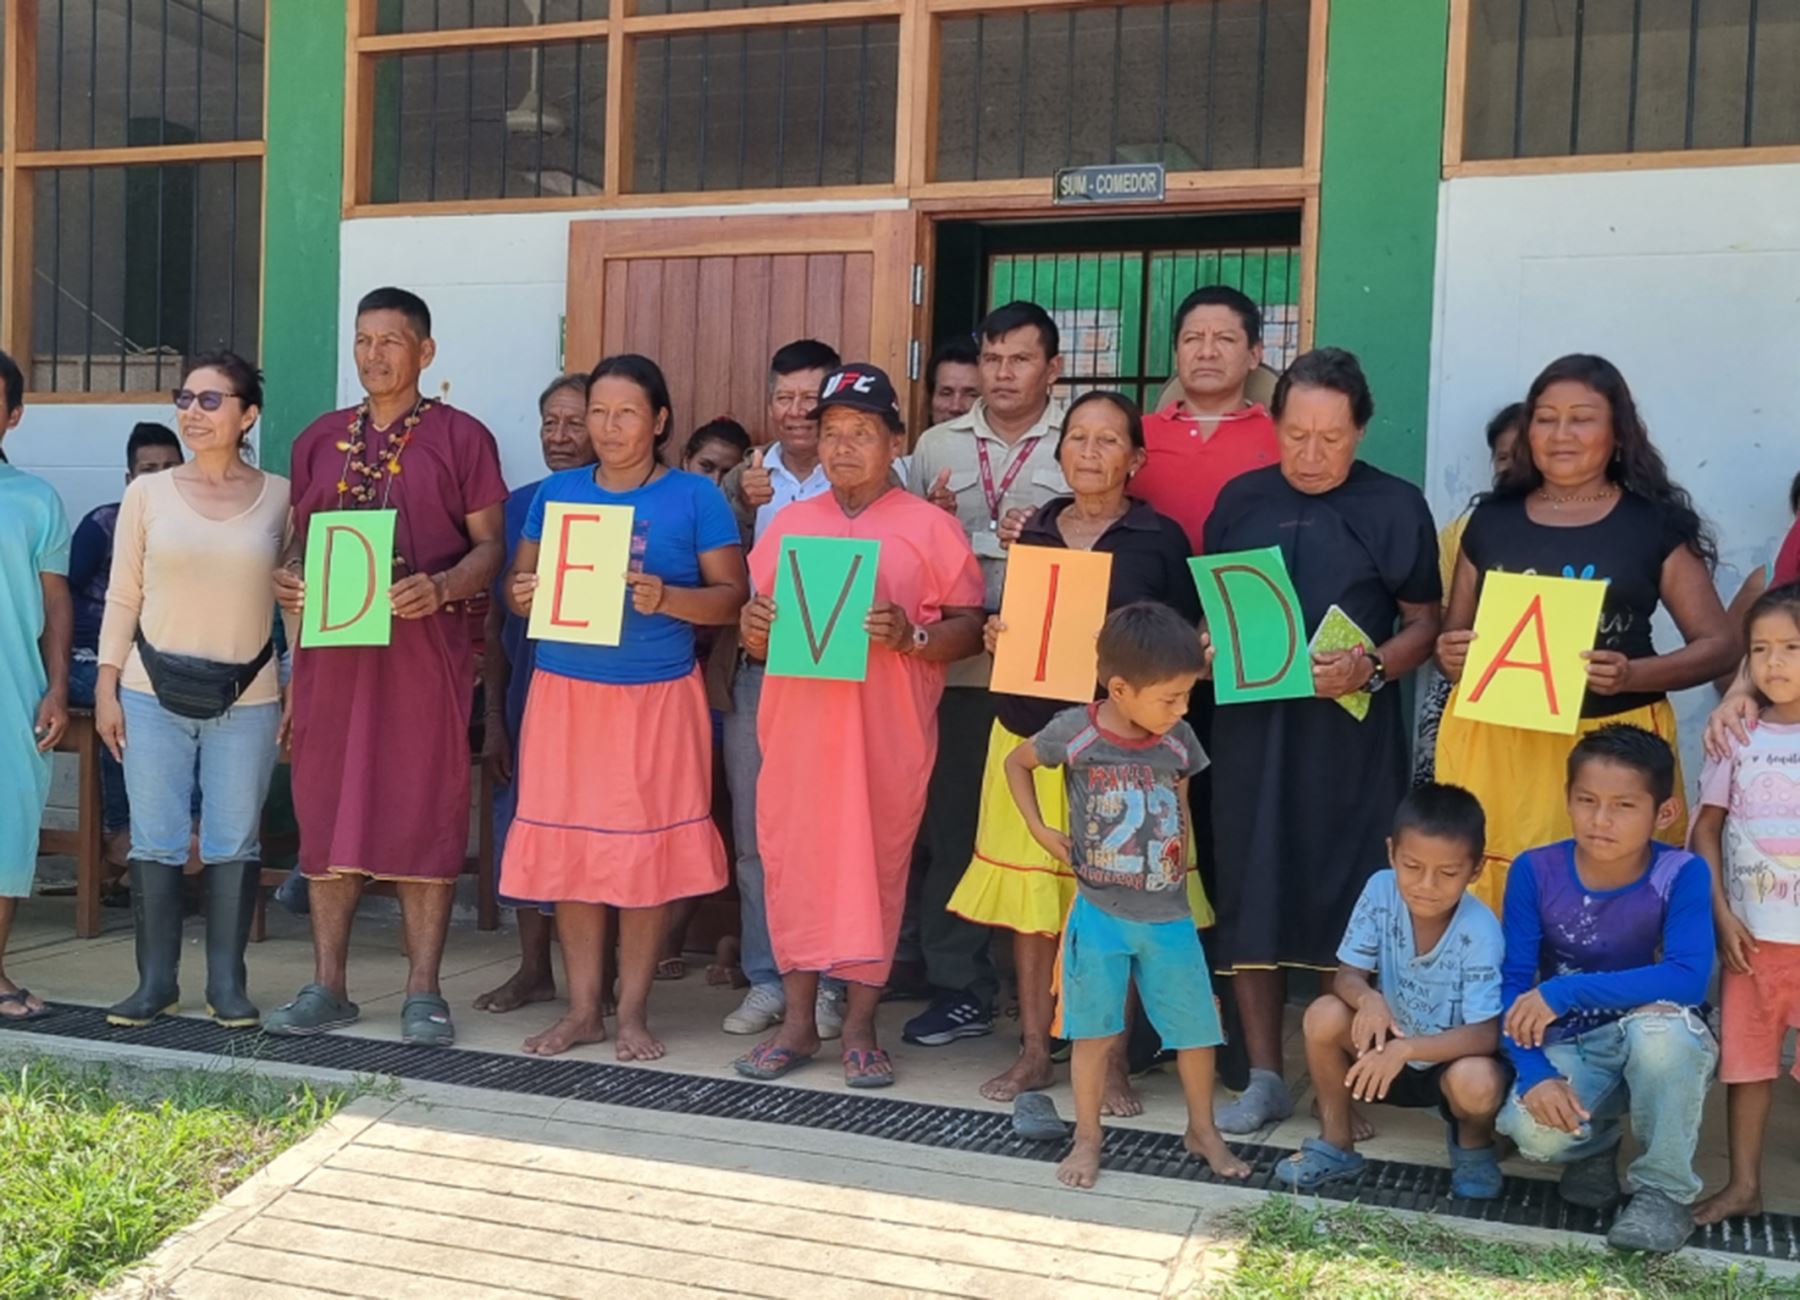 Loreto: Devida ampliará su intervención en 16 comunidades nativas del Putumayo